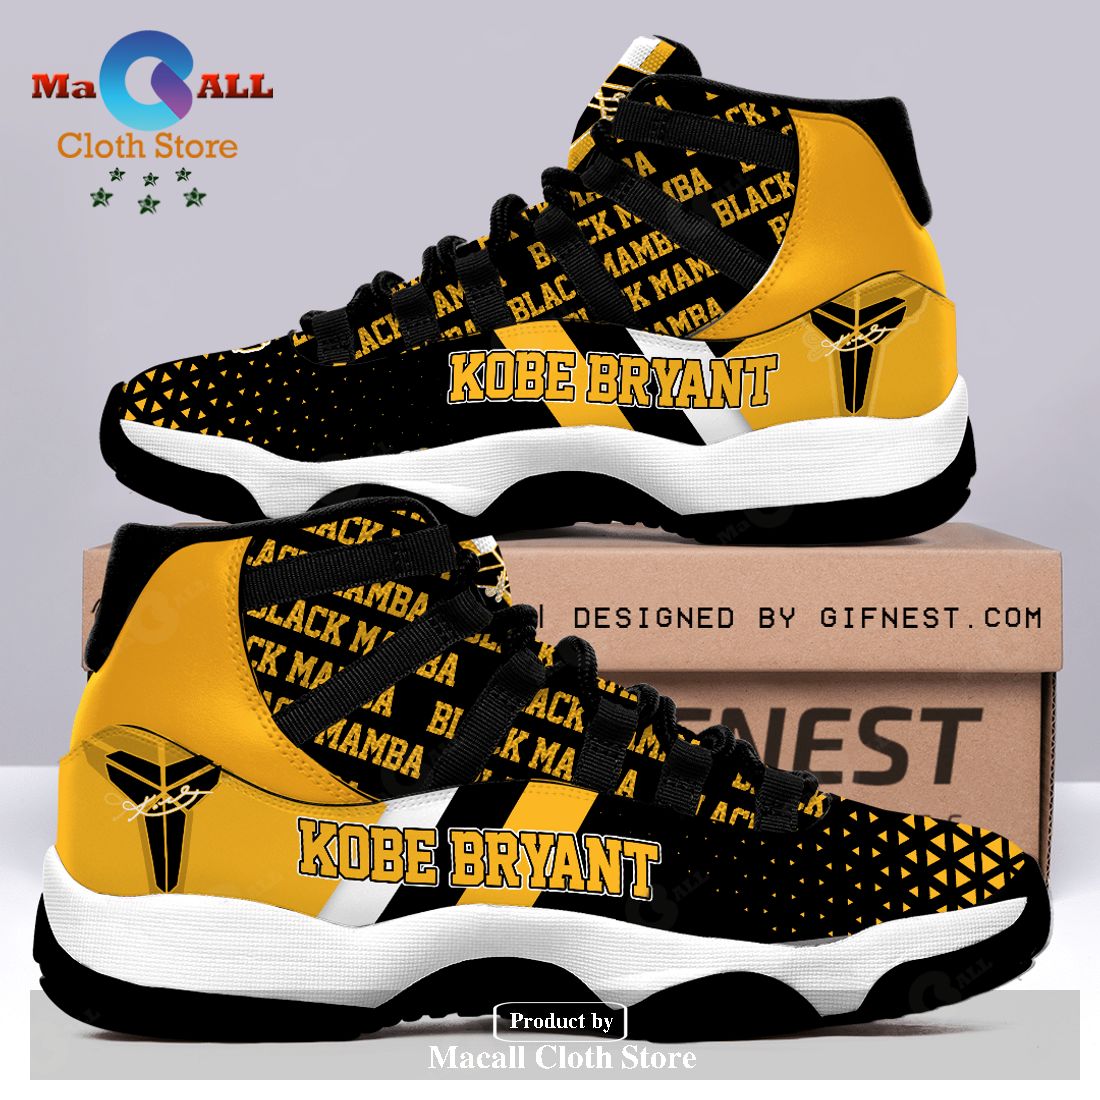 Kobe Bryant Air Jordan 11 Sneakers Shoes Hot 2023 Gifts For Men Women ...